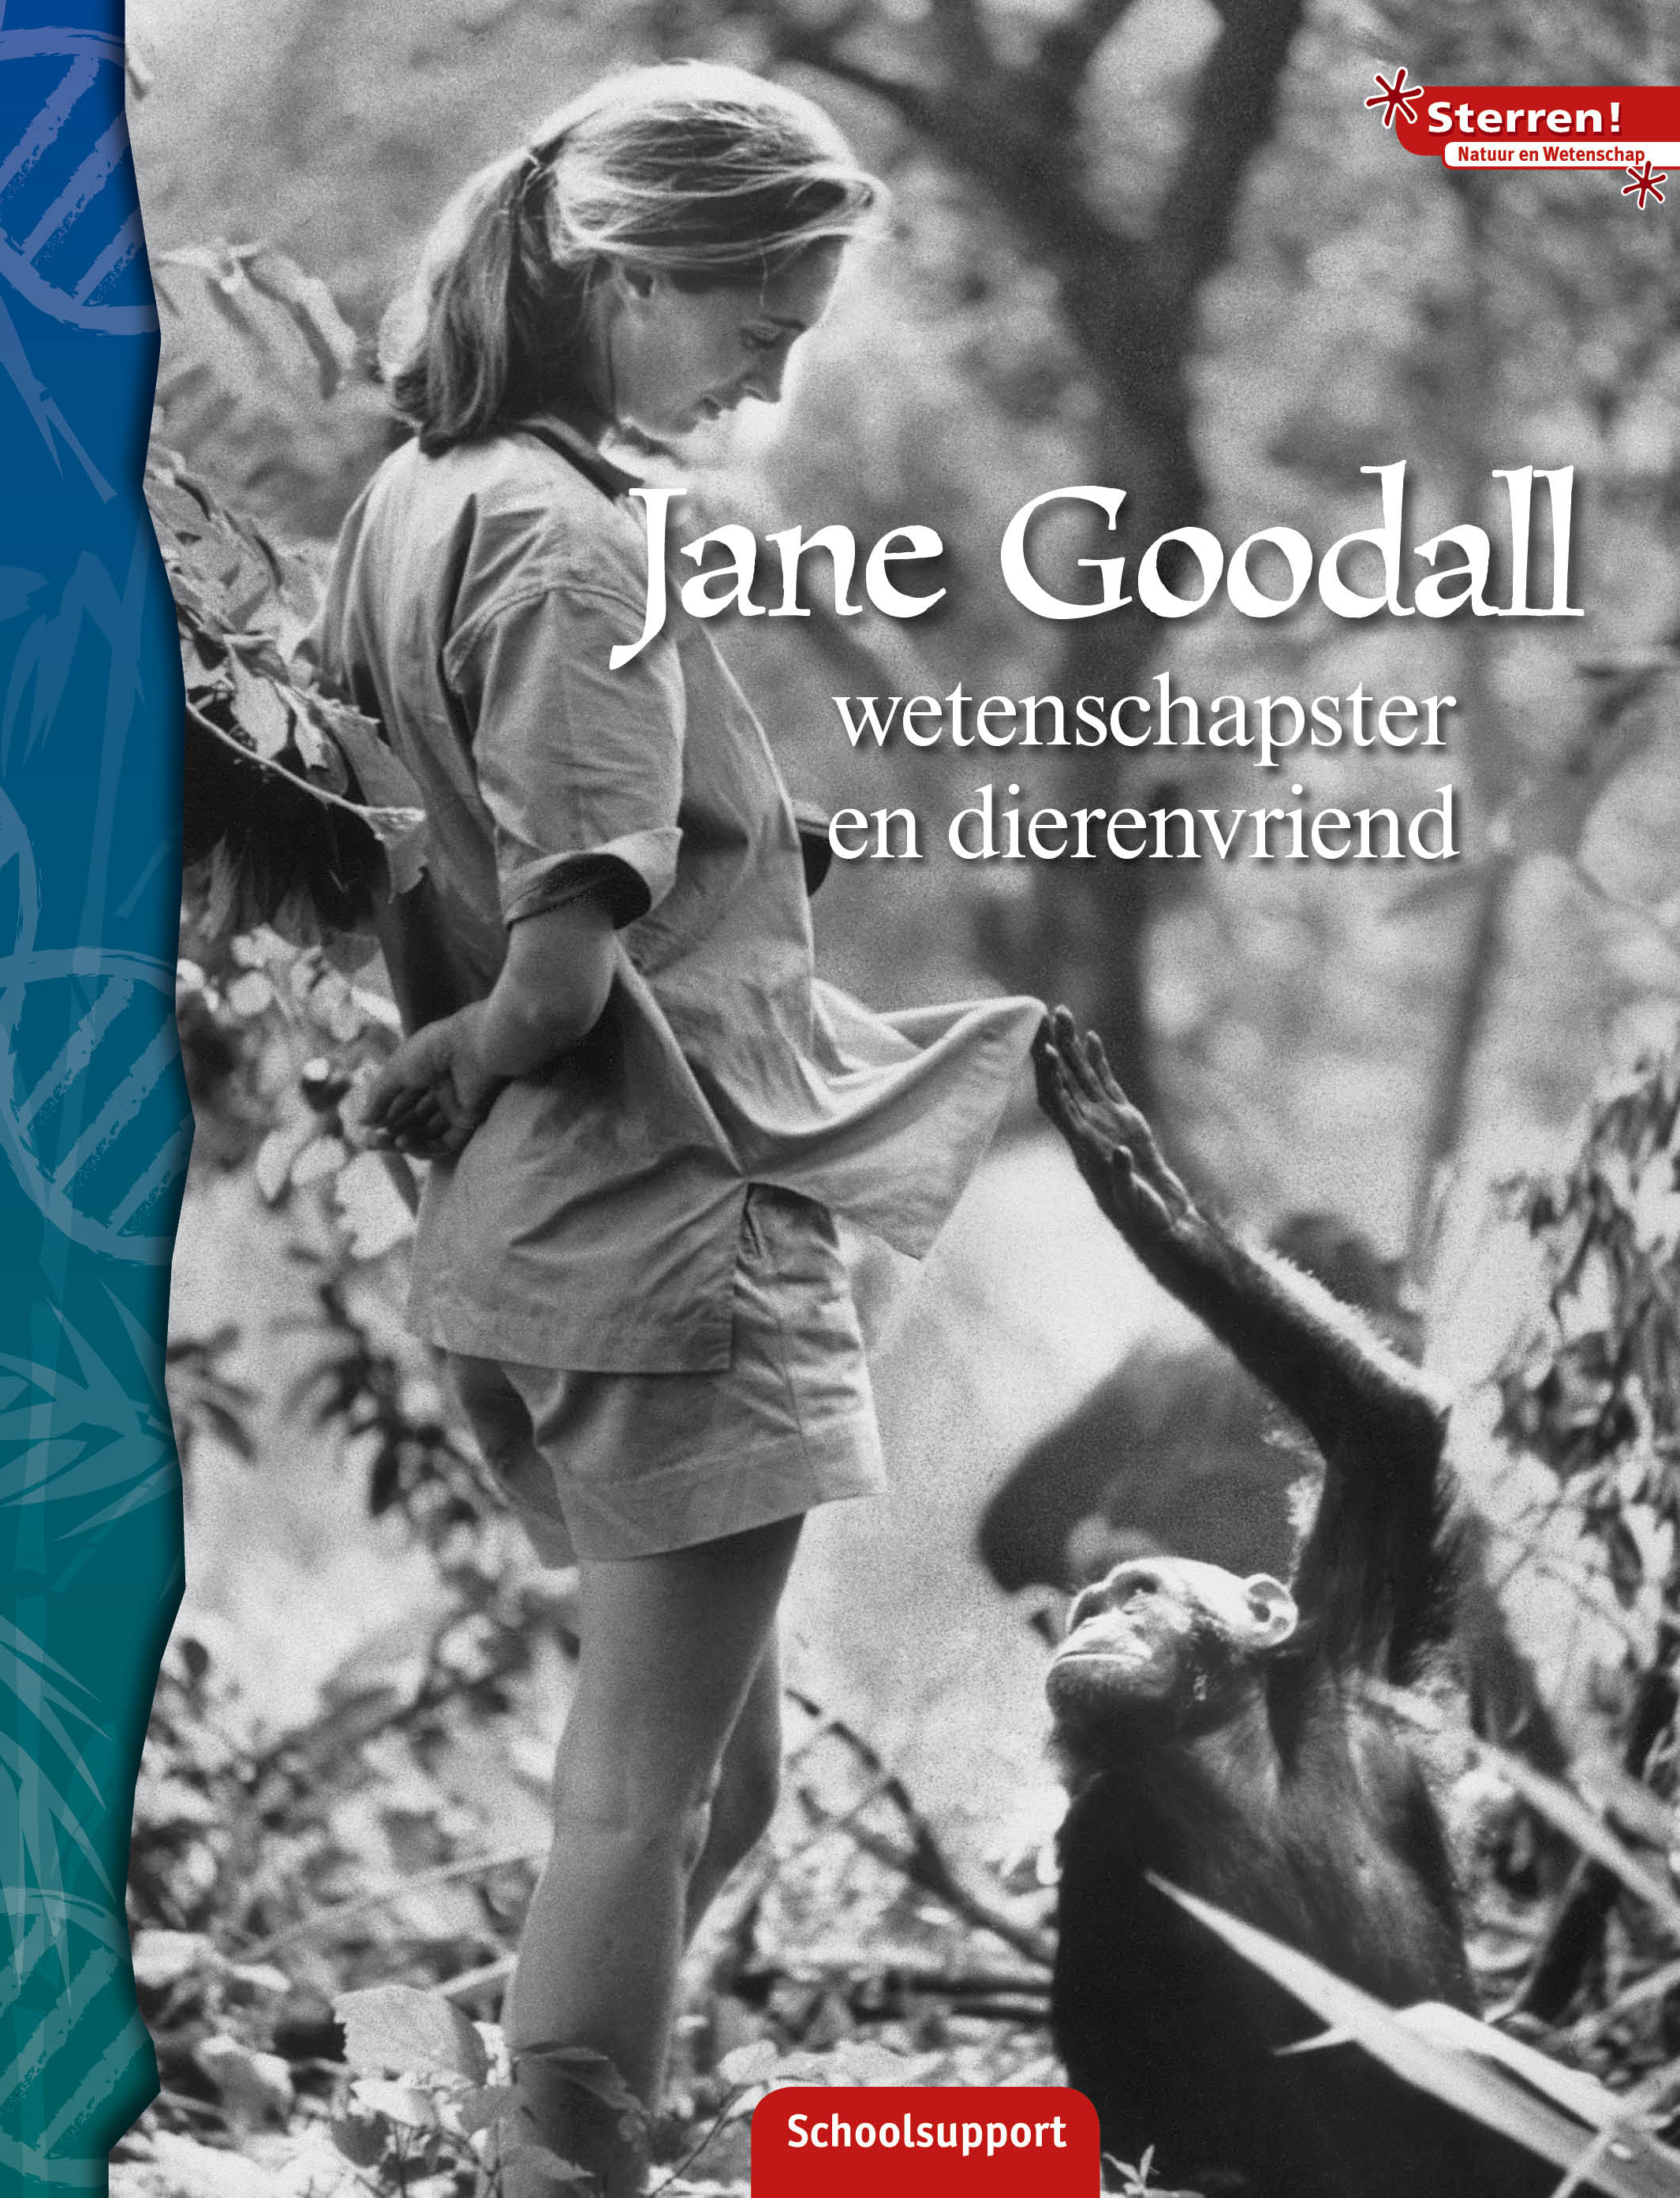 SNBSWN131 Sterren Jane Goodall